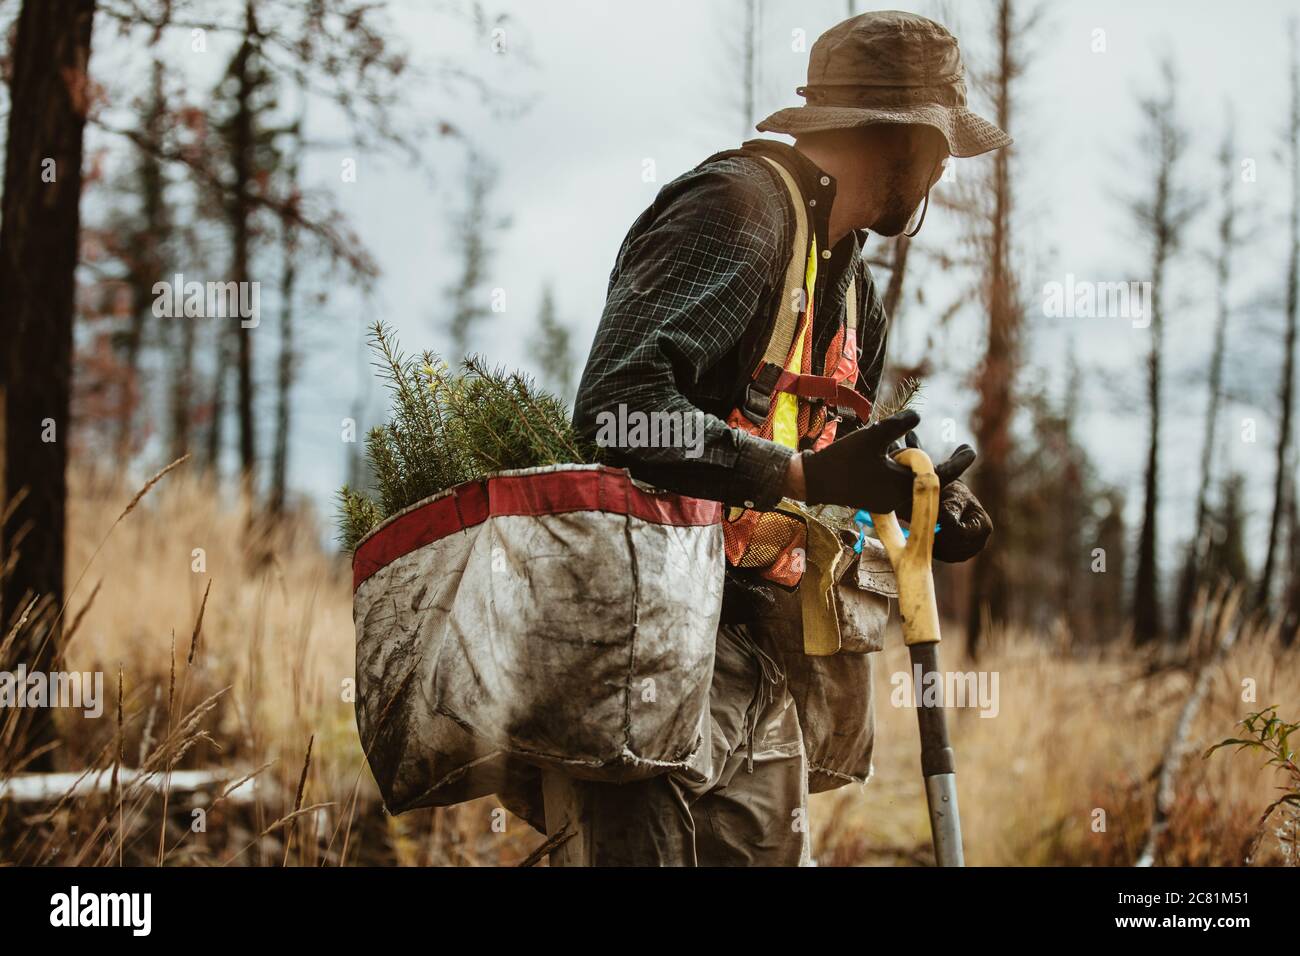 Mann, der in entwaldeten Bereich des Waldes arbeitet. Waldranger mit Säcken von neuen Setzlingen und Schaufel. Stockfoto